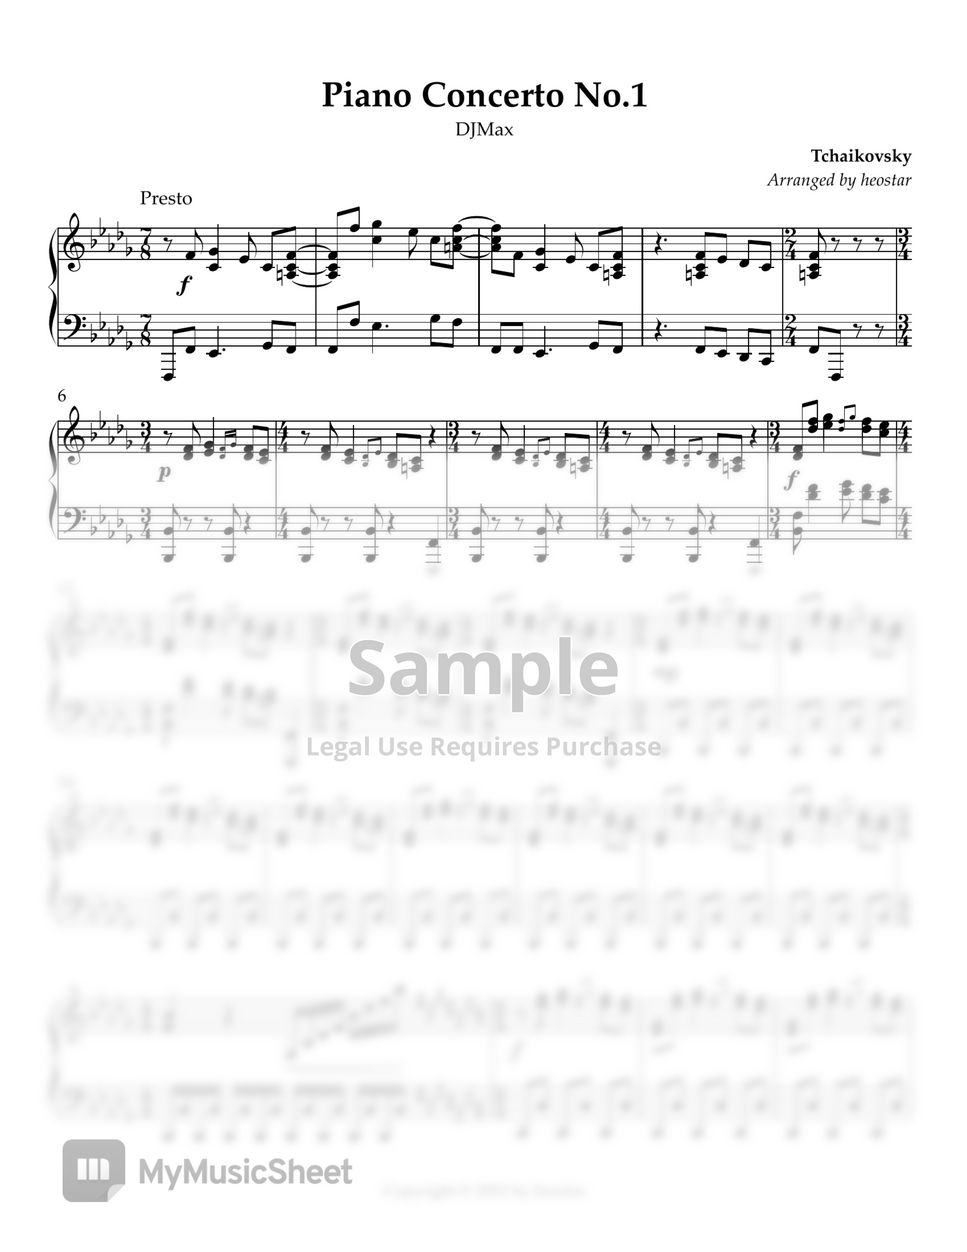 DJMax - Piano Concerto No.1 (Tchaikovsky) by heostar